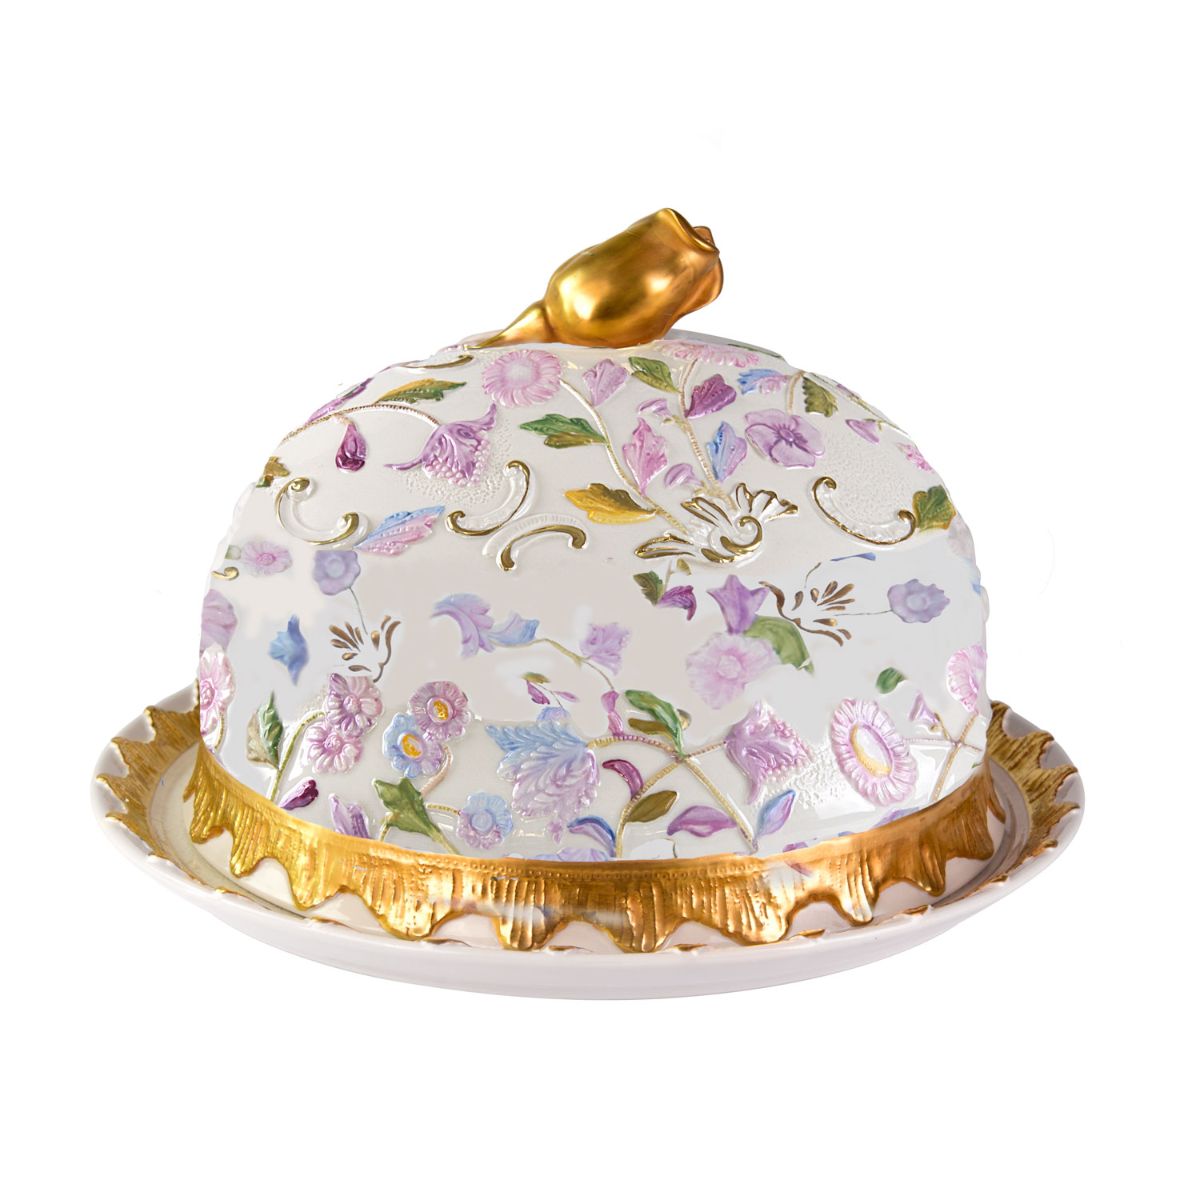 Taormina Multicolor & Gold Small Cake Stand VILLARI